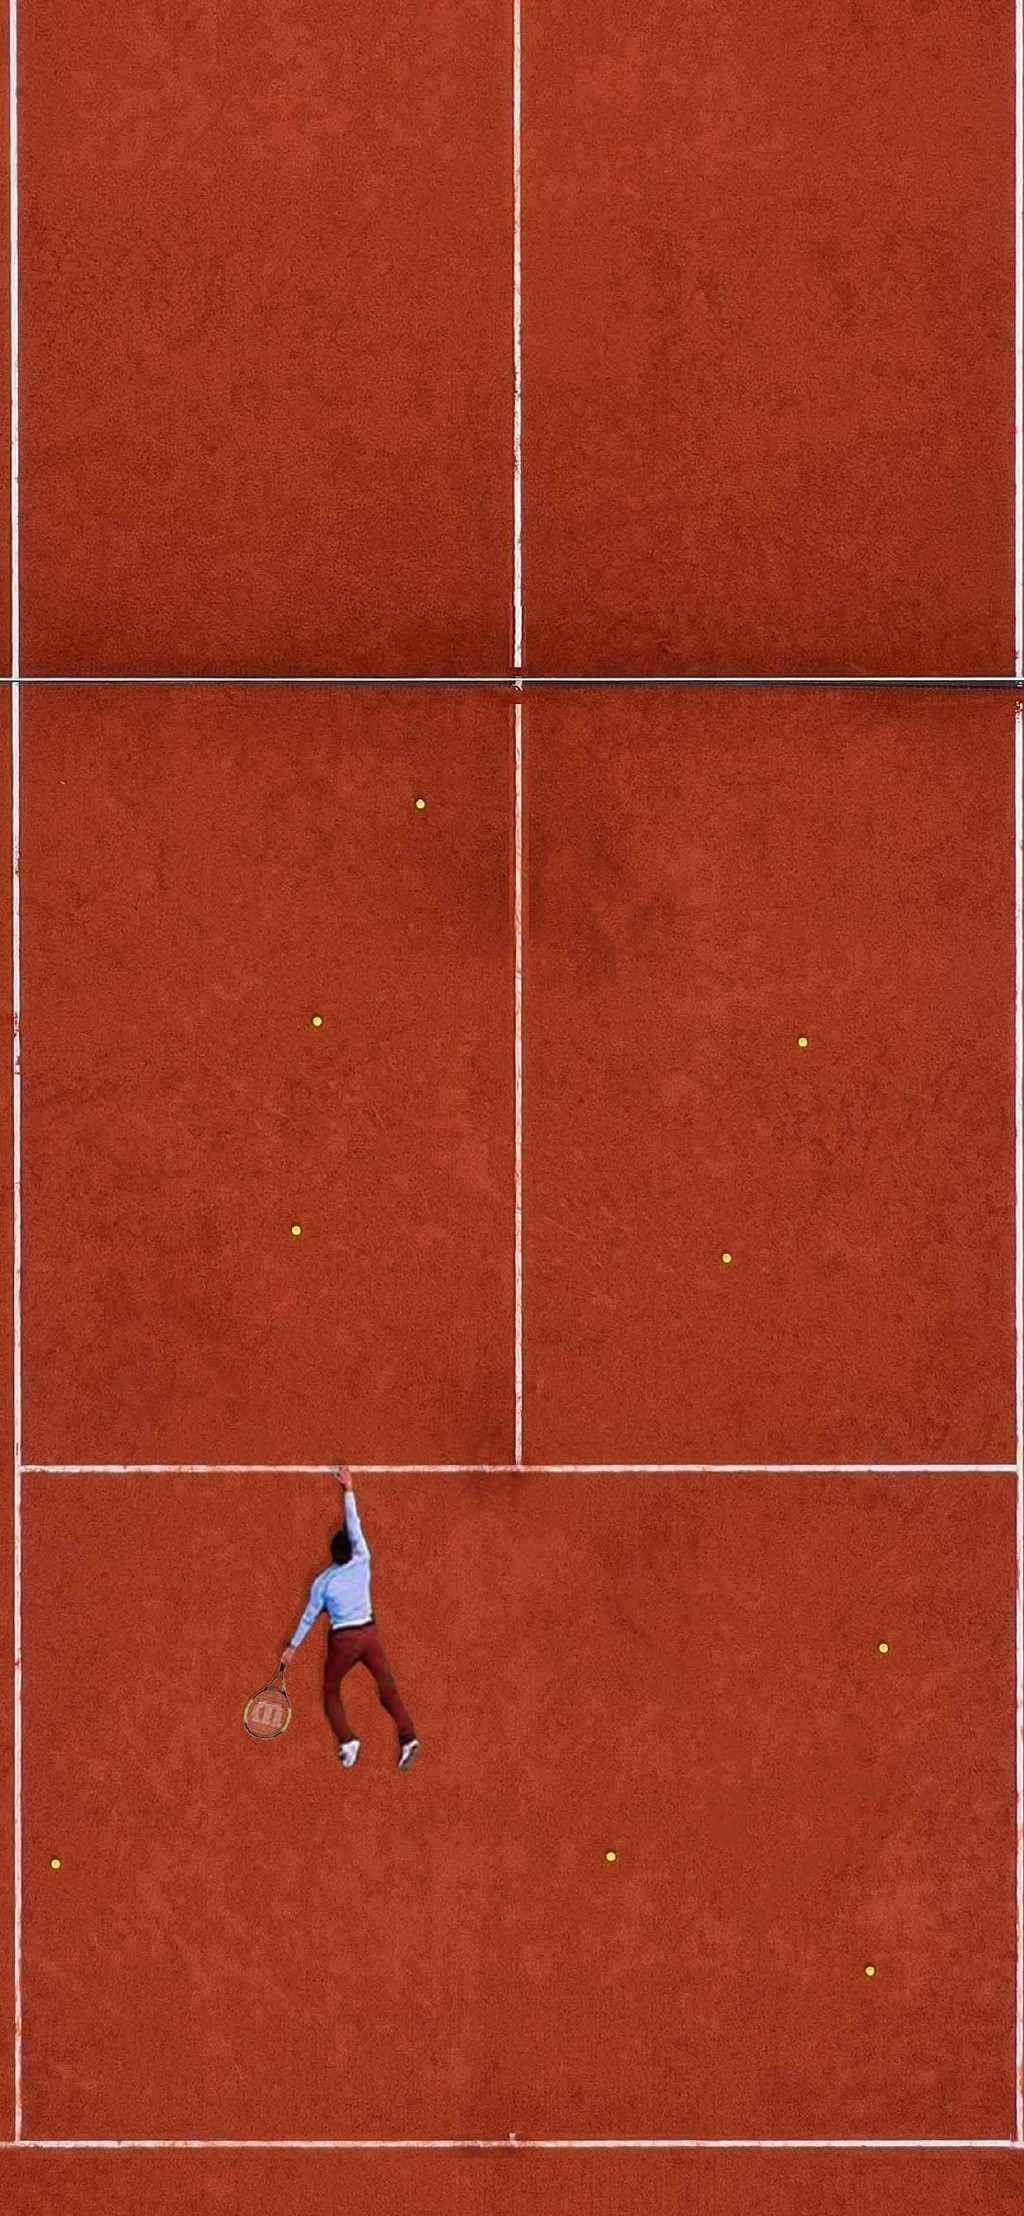 网球体育运动唯美高清手机壁纸